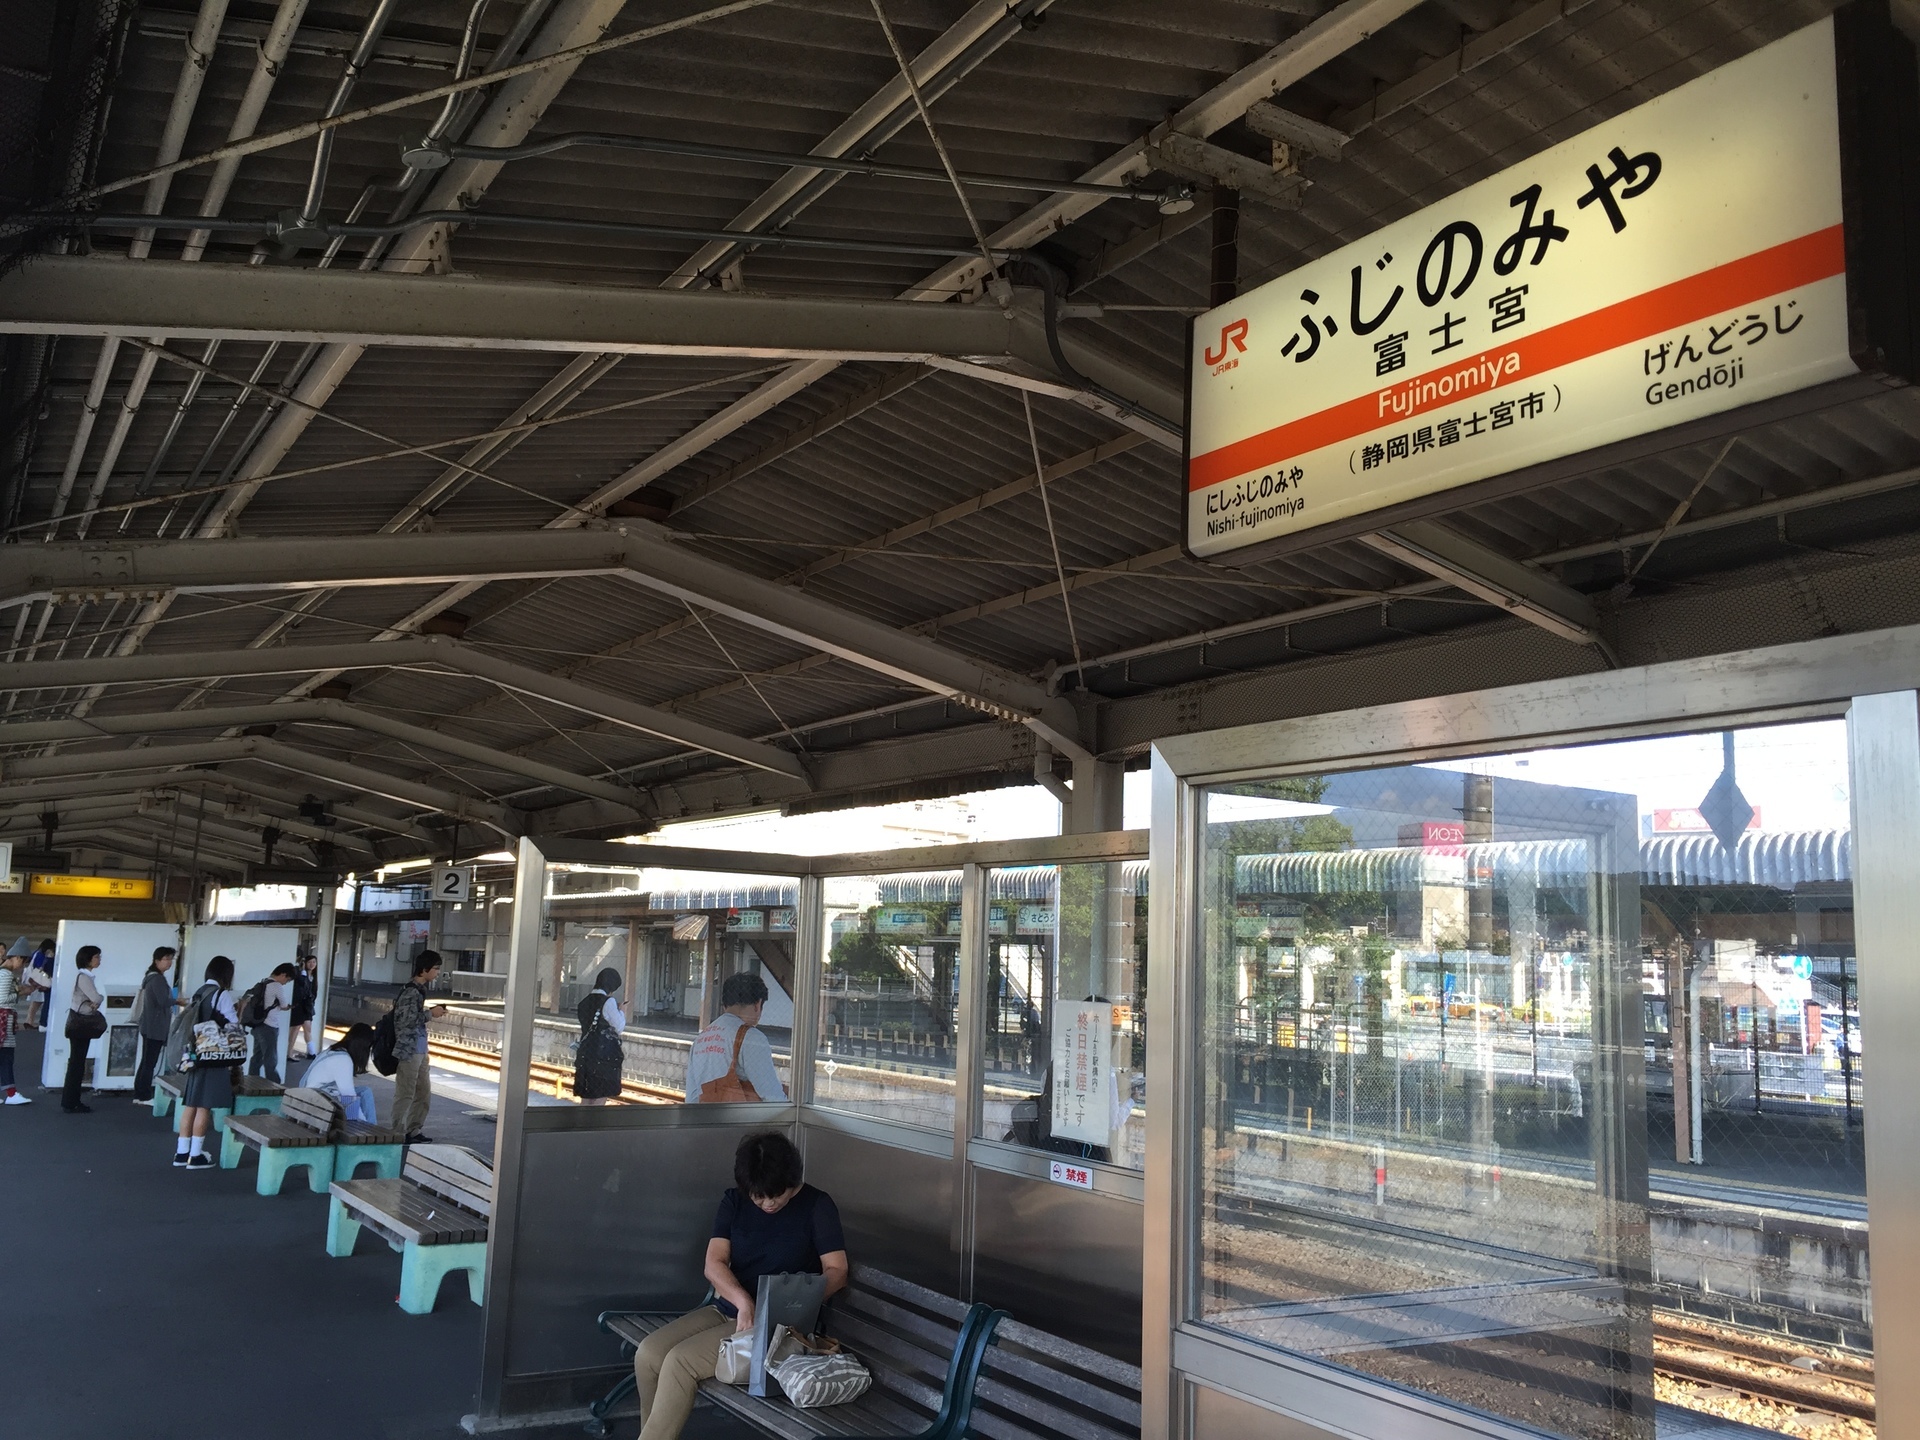 ヤキソバエクスプレス で富士宮やきそば学会へ 日本の鉄道全路線 乗りつぶしへの道